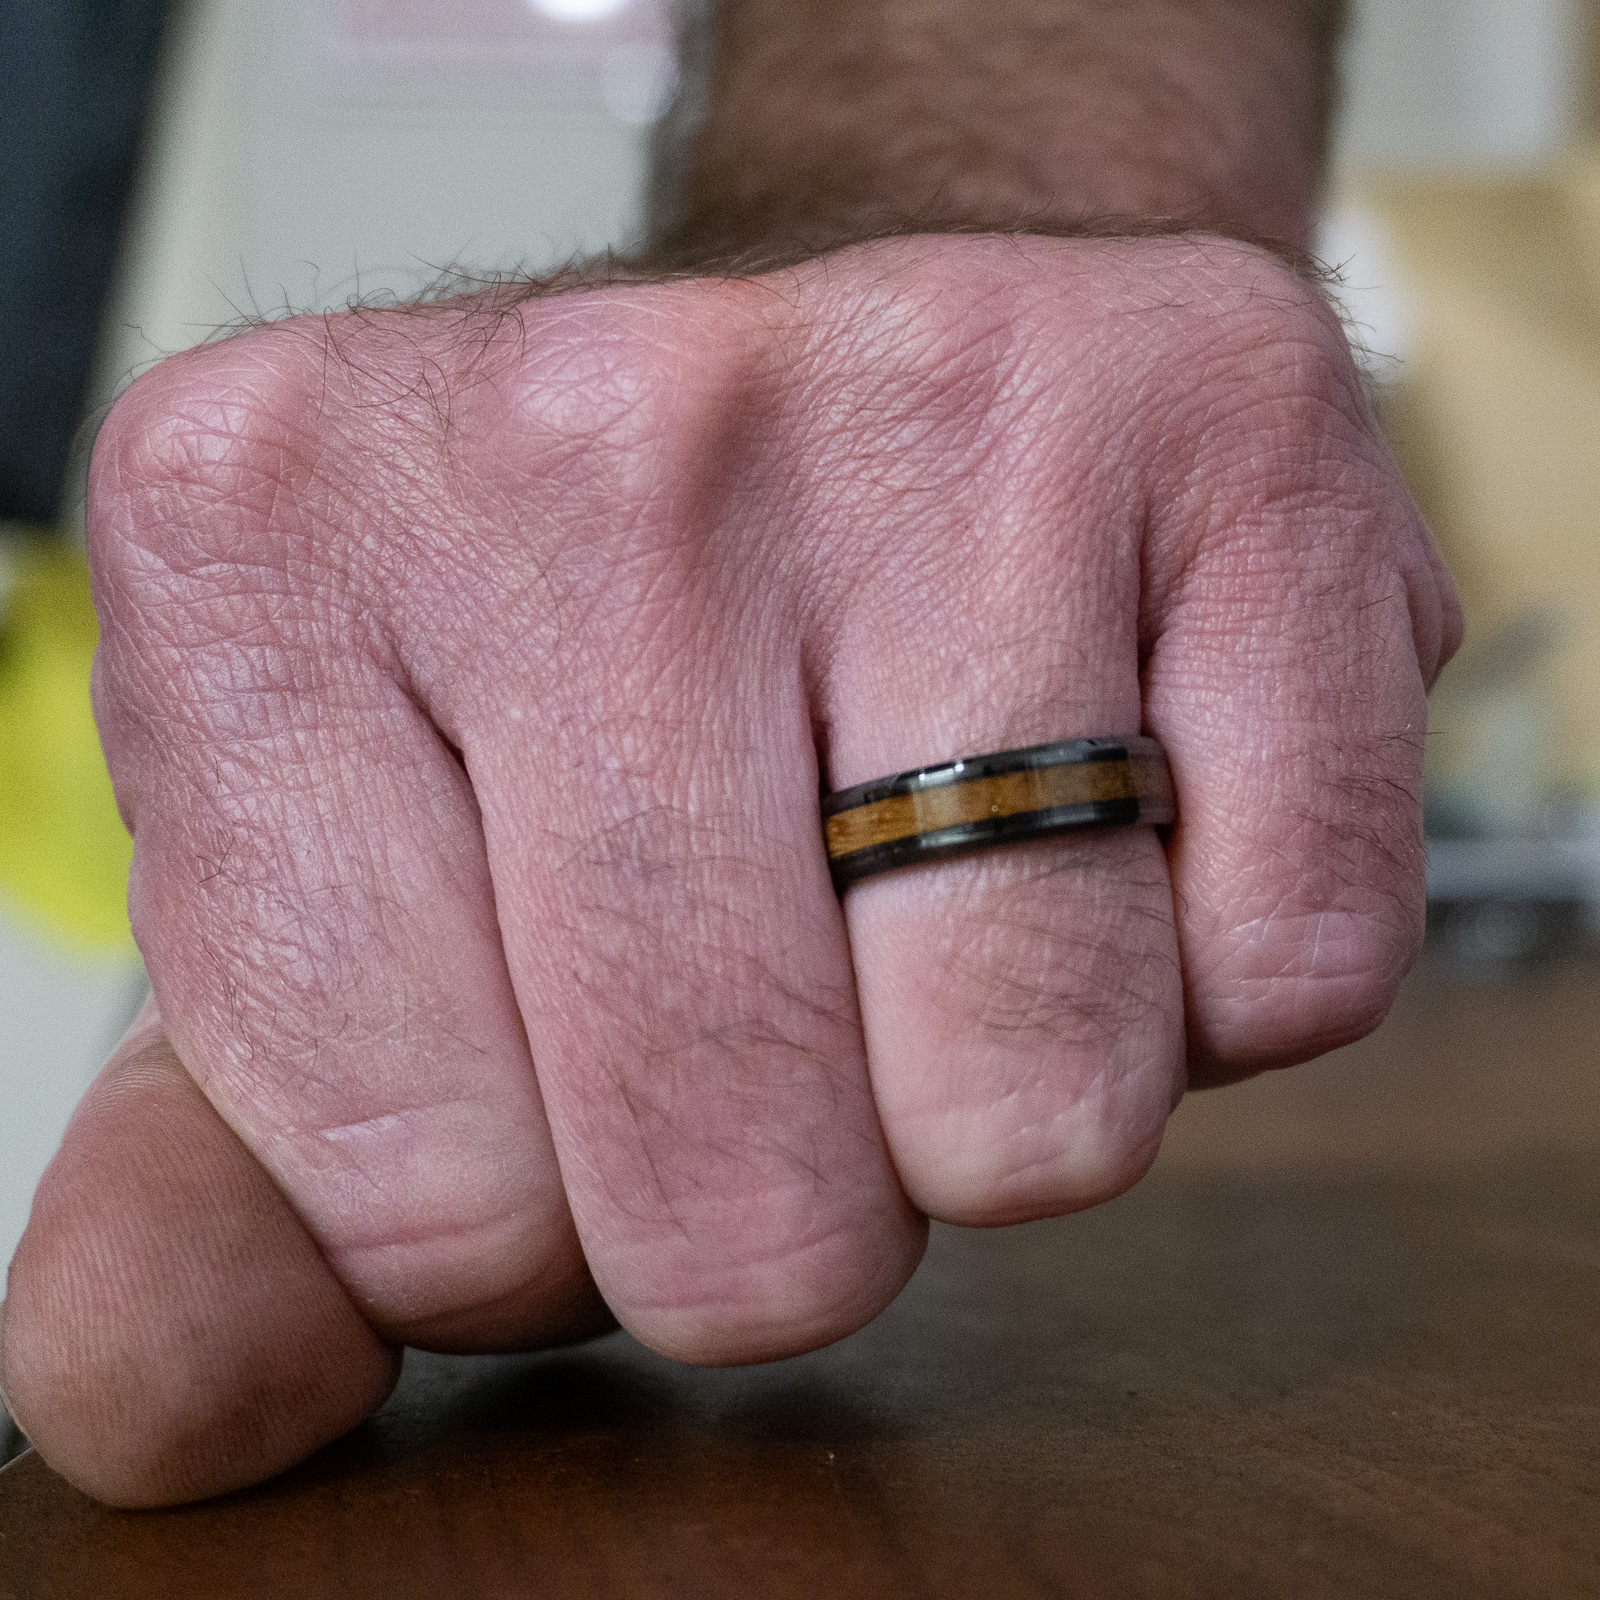 whiskey barrel wedding ring on finger